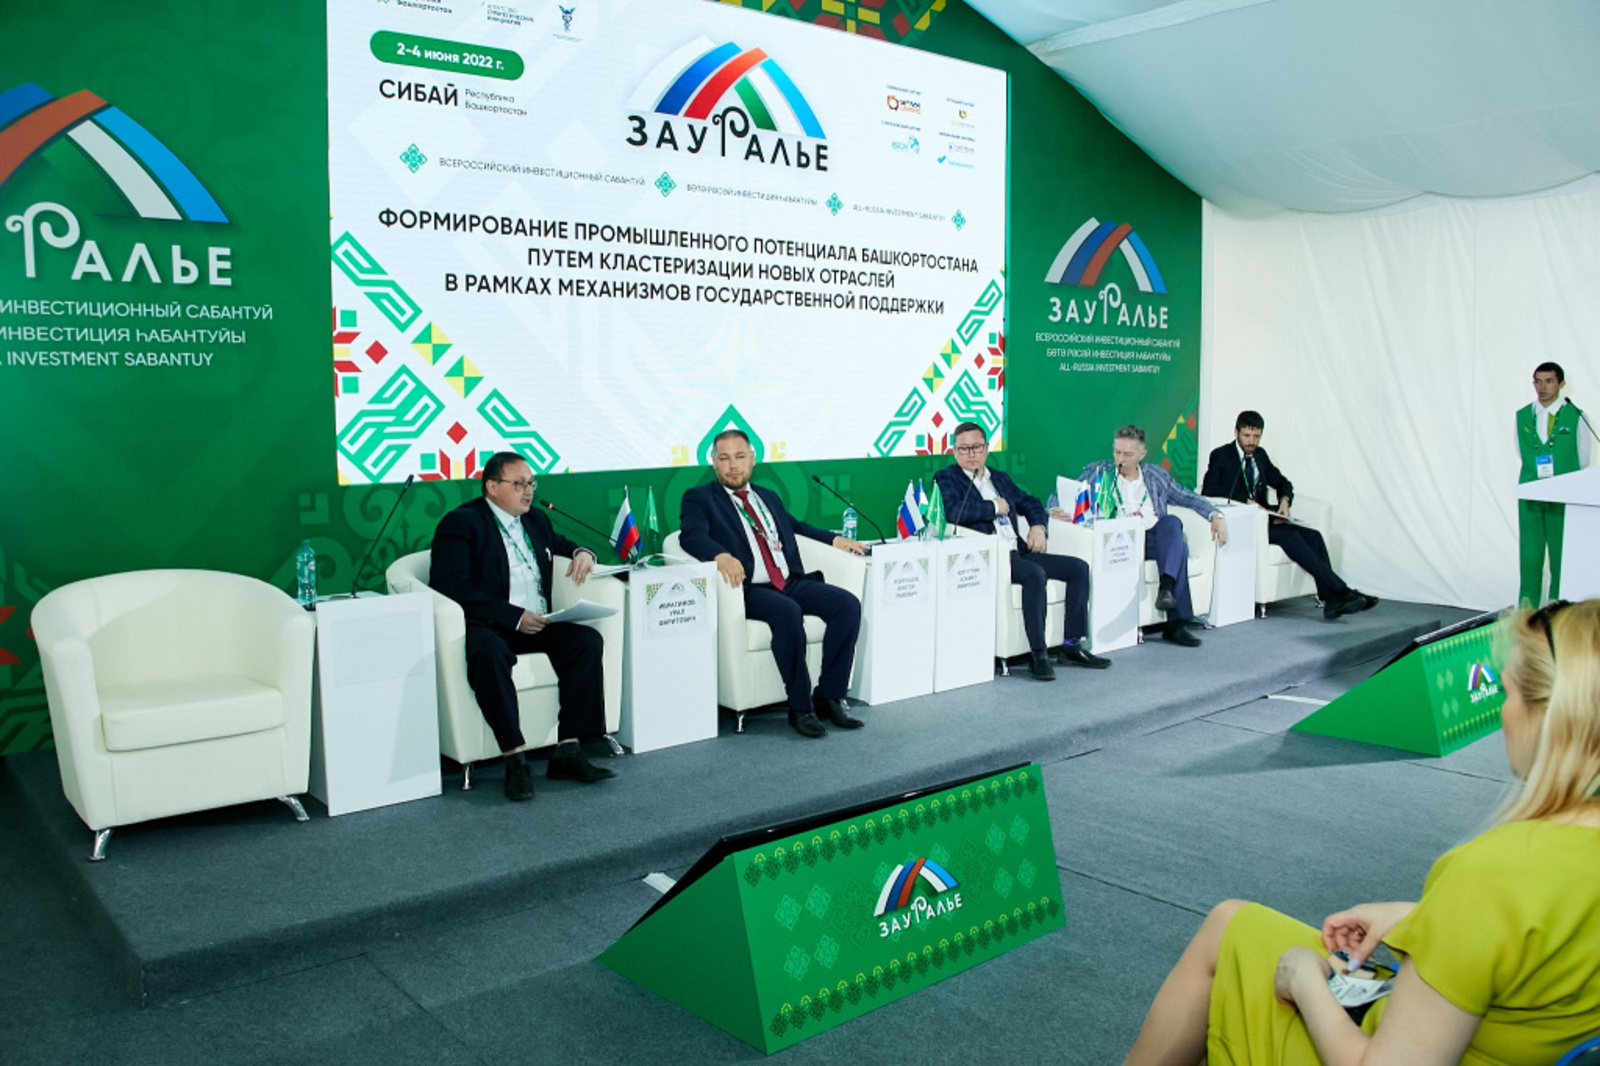 На инвестсабантуе «Зауралье-2022» обещали поддержку зеленых инвесторов, которые придут в Башкирию